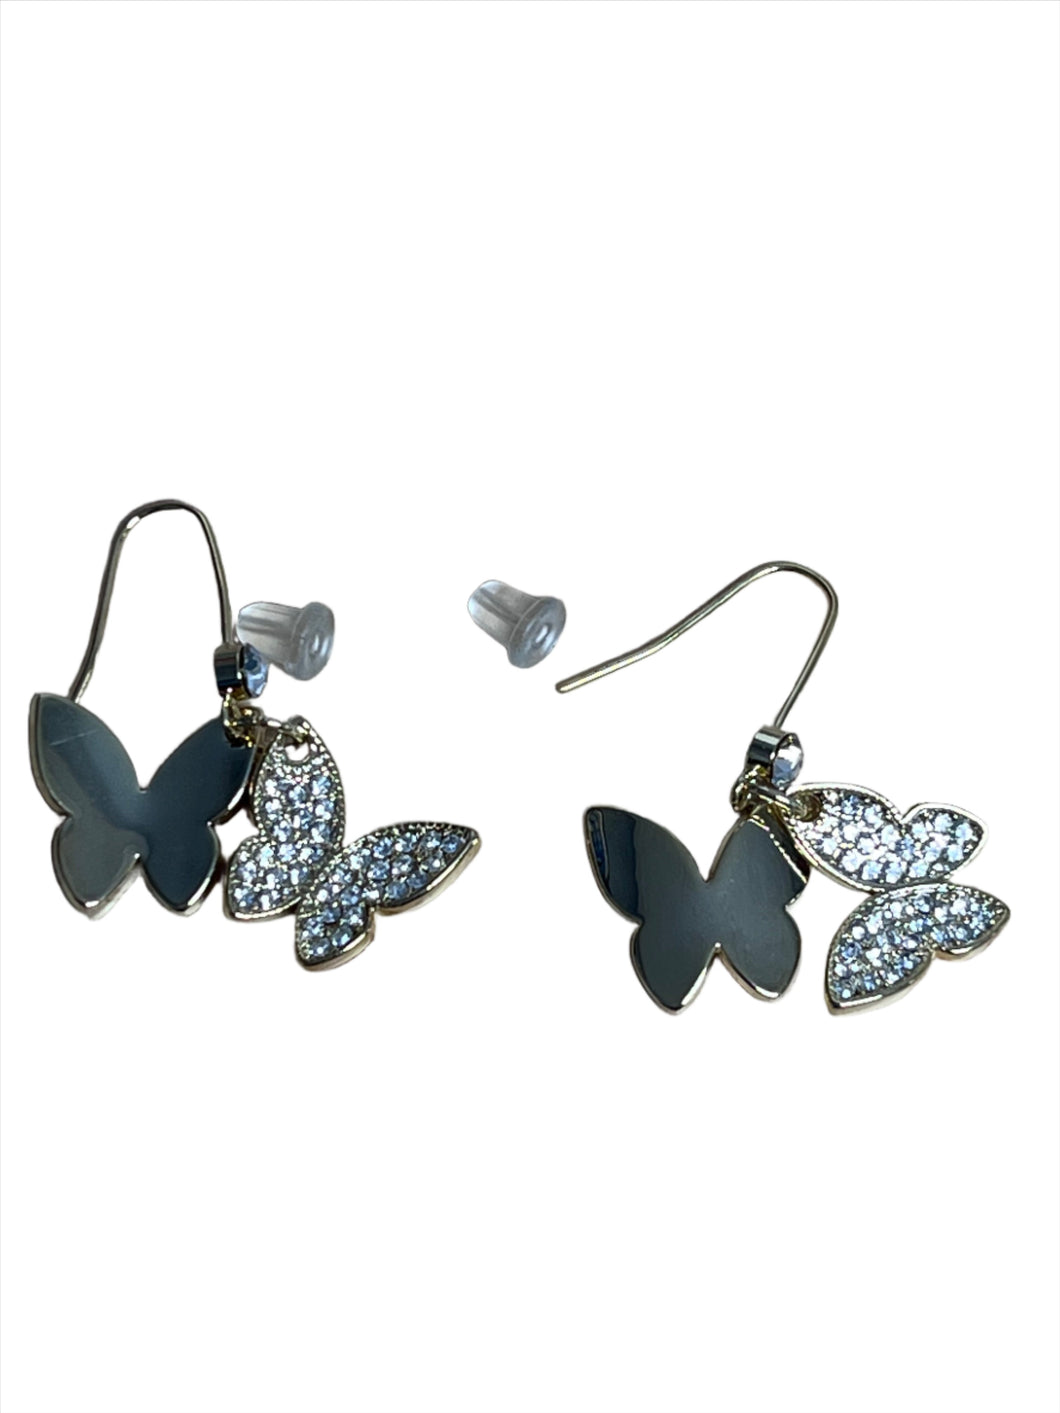 Beautiful Little Butterfly Earrings